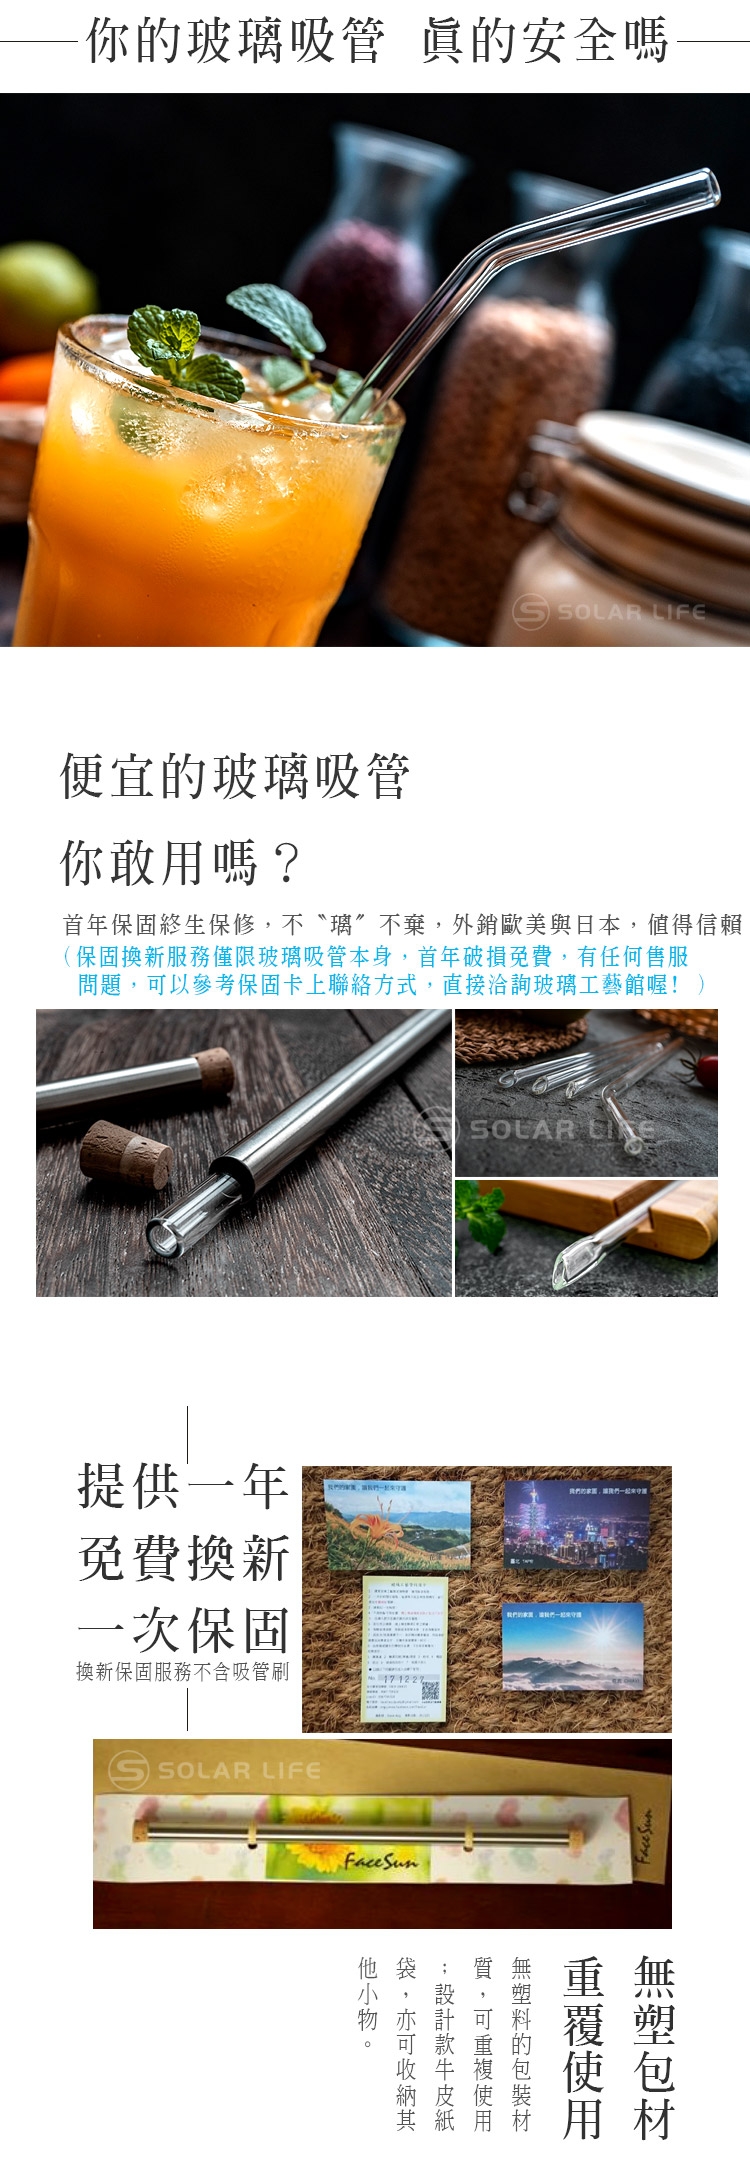 [玻璃工藝管]獨家專利戳刀吸管8mm.戳刀吸管,8mm玻璃吸管,環保吸管耐熱吸管